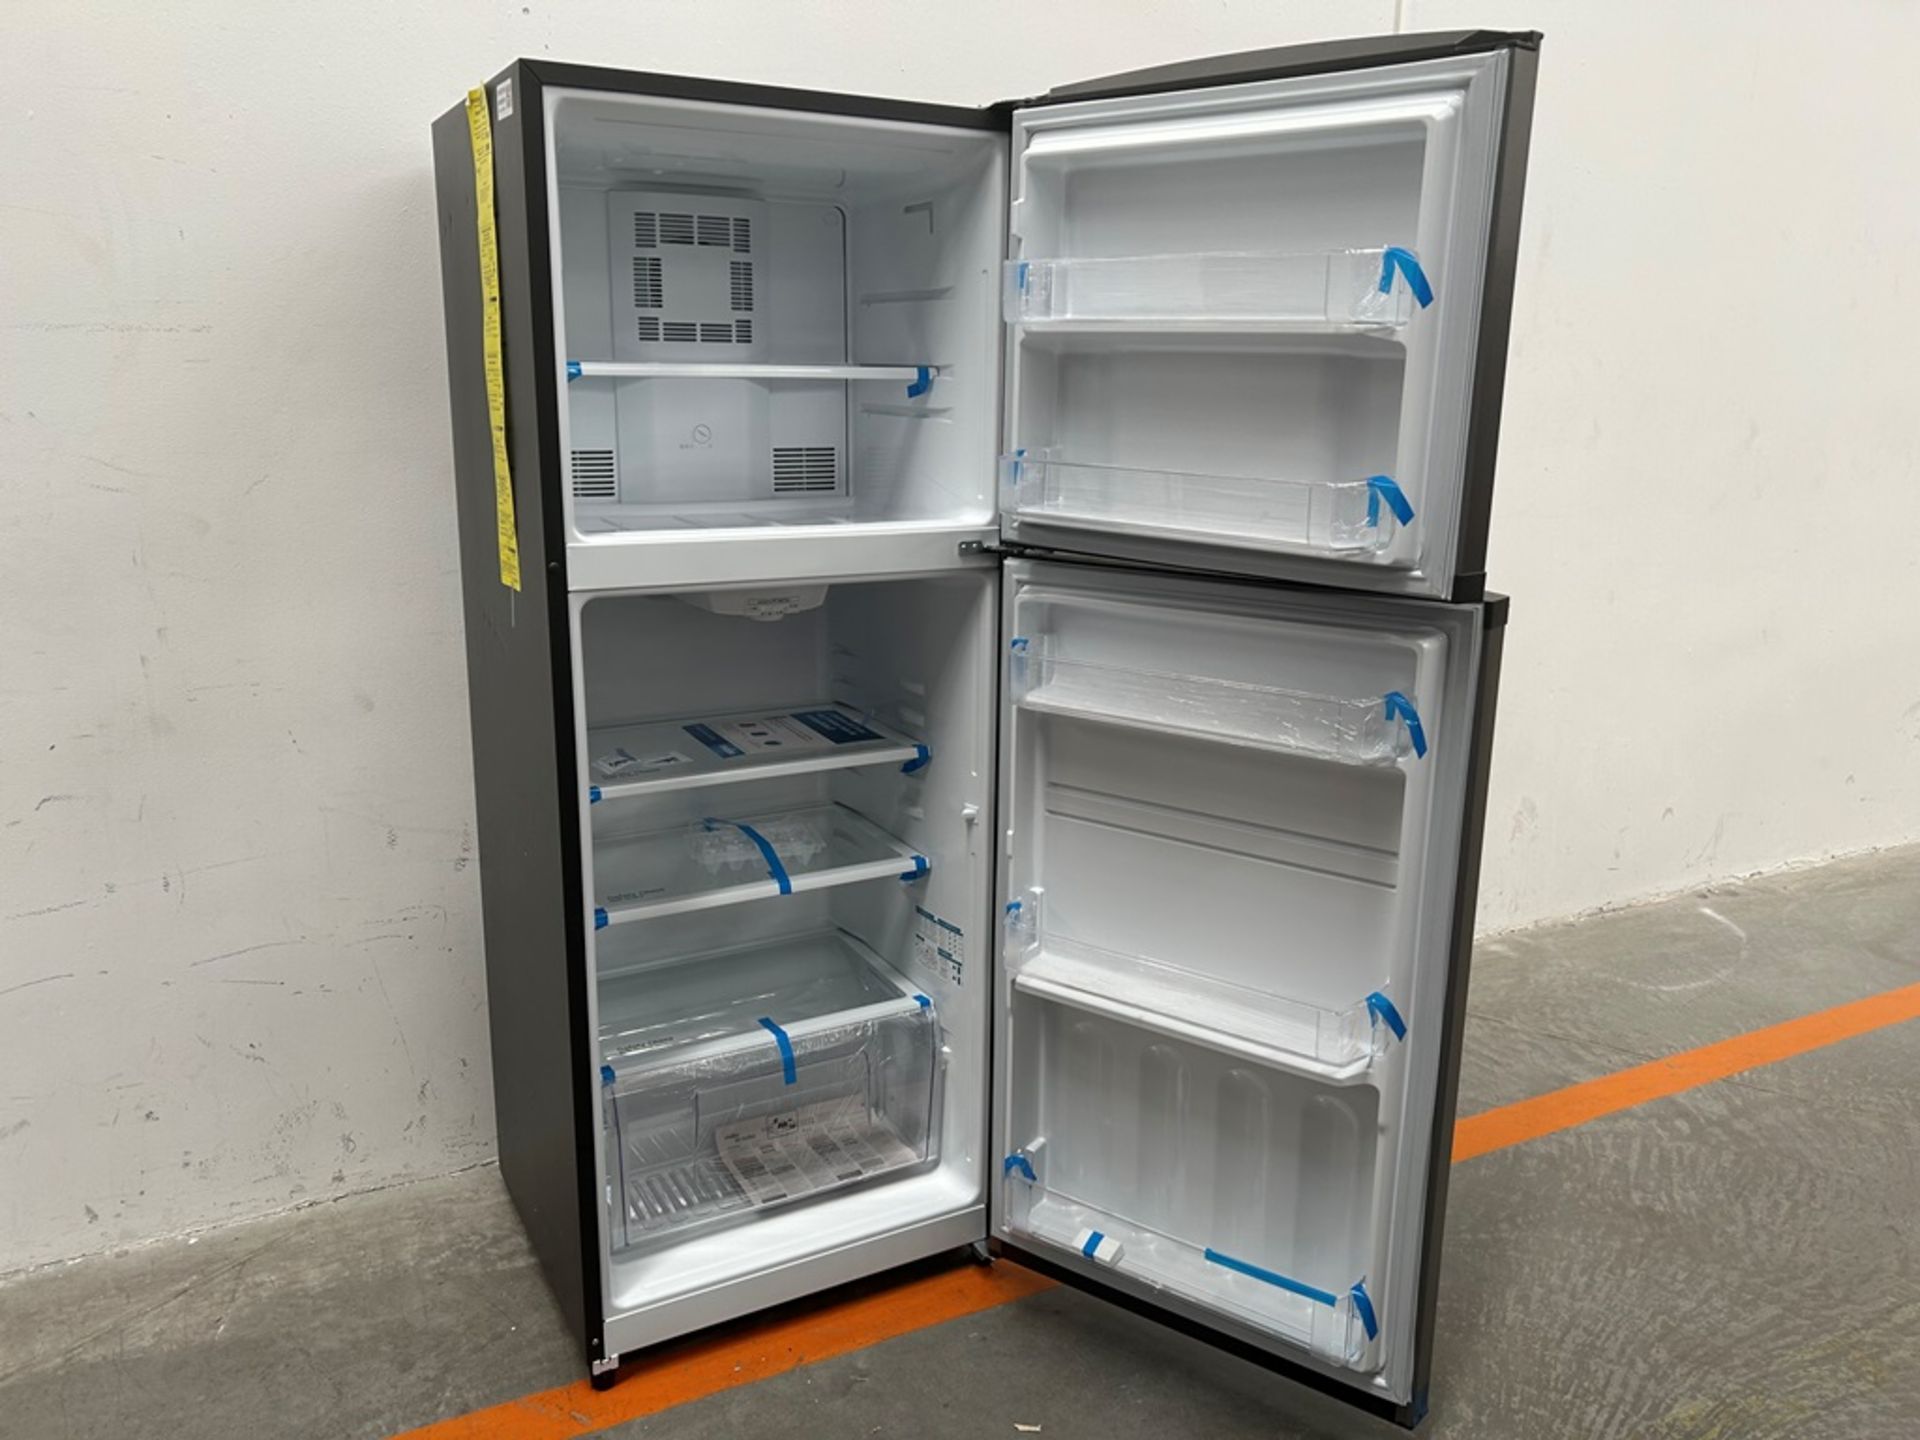 Lote de 2 refrigeradores contiene: 1 refrigerador Marca MABE, Modelo RME360FVMRMA, Serie 816455, Co - Image 11 of 18